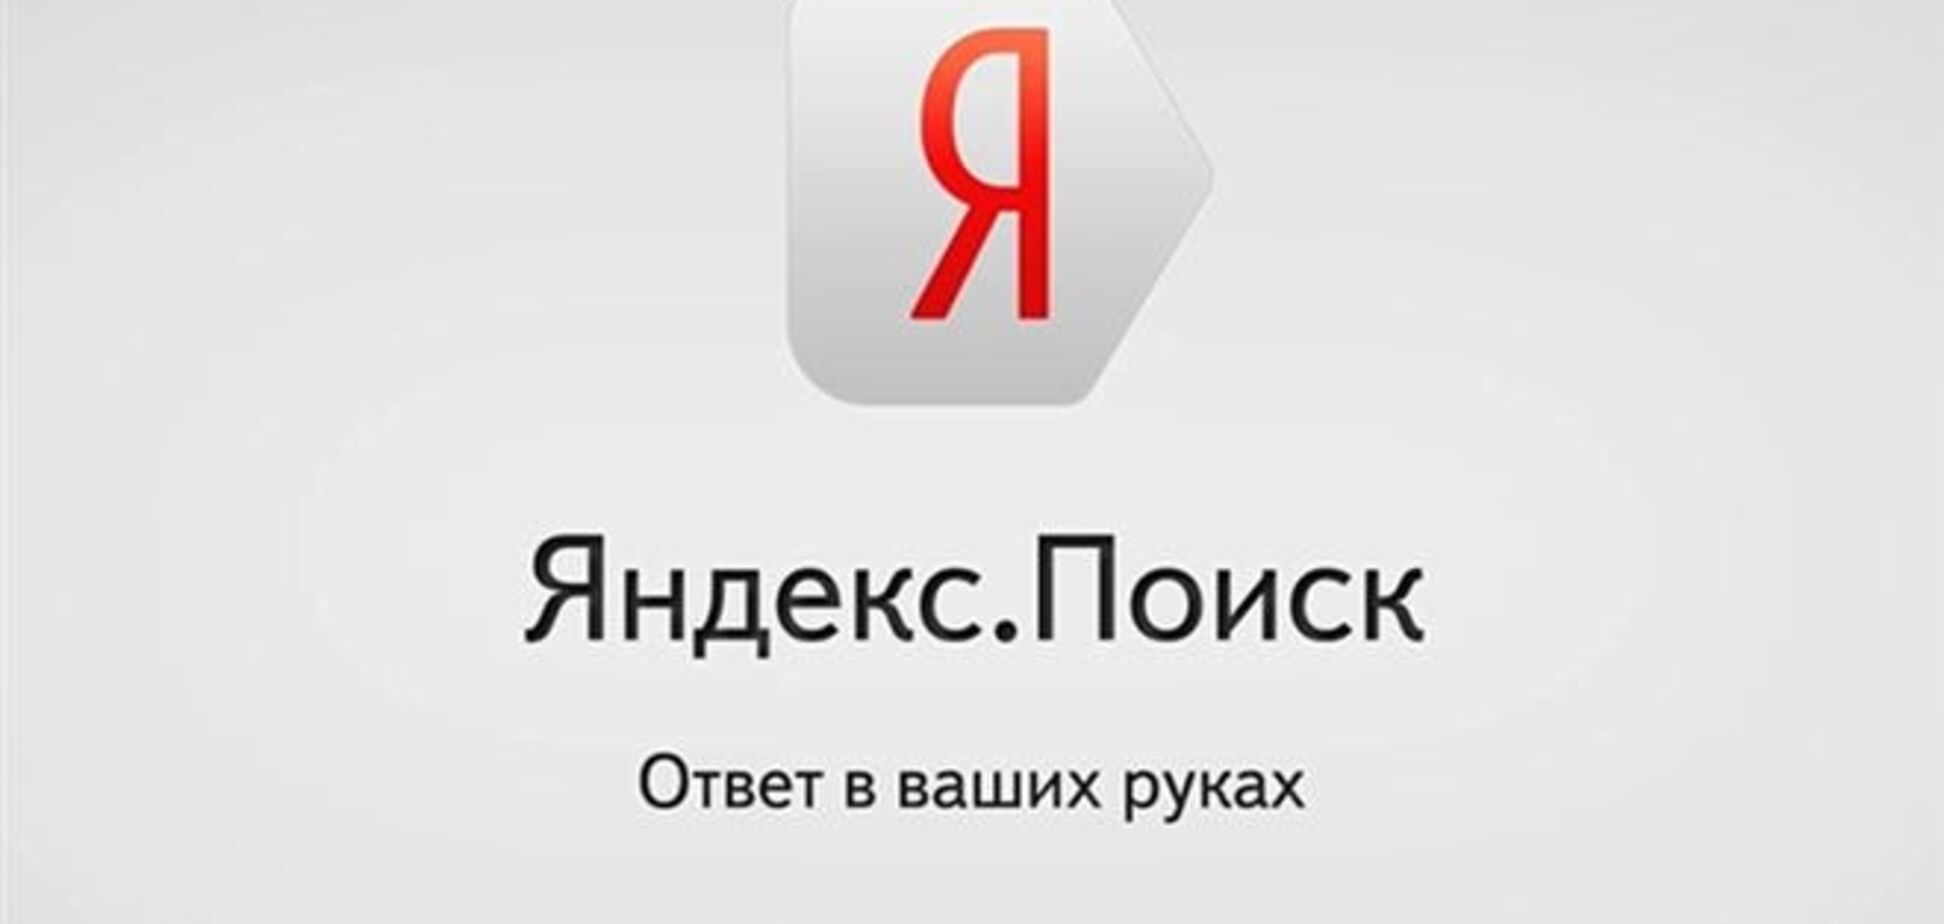 'Яндекс' создаст разные карты Крыма для Украины и РФ